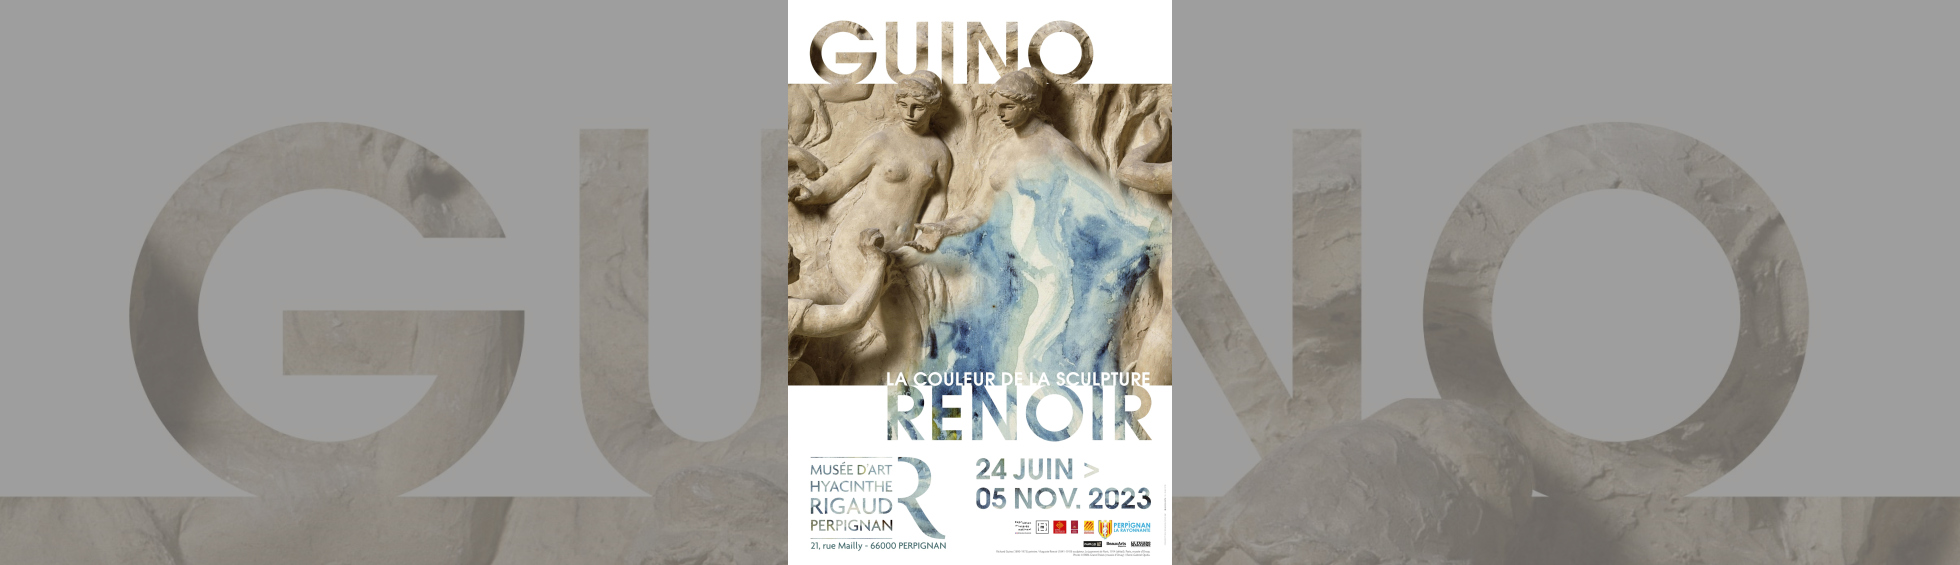 Affiche exposition "Guino Renoir la couleur de la sculpture" - Oeuvre Pierre Auguste Renoir 